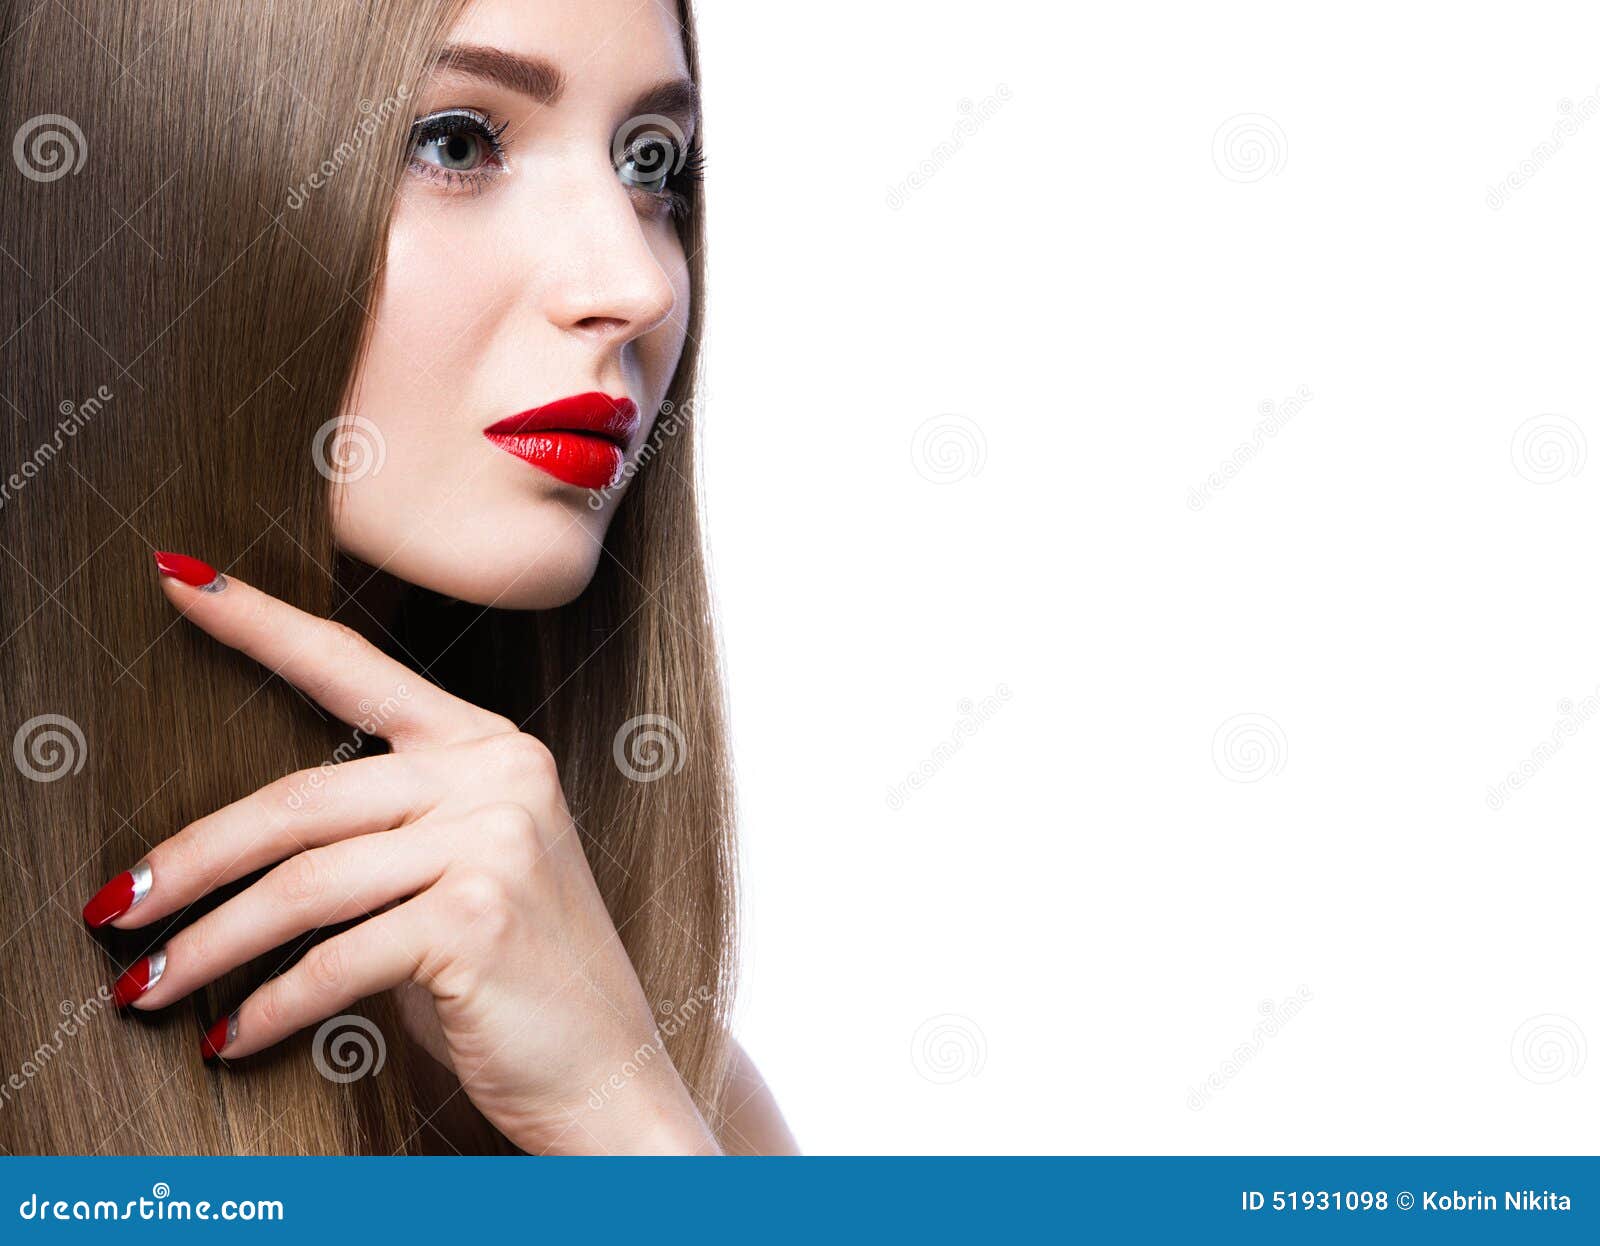 Mooi jong meisje met een heldere samenstelling en rode spijkers Beeld in de studio op een witte achtergrond wordt genomen die